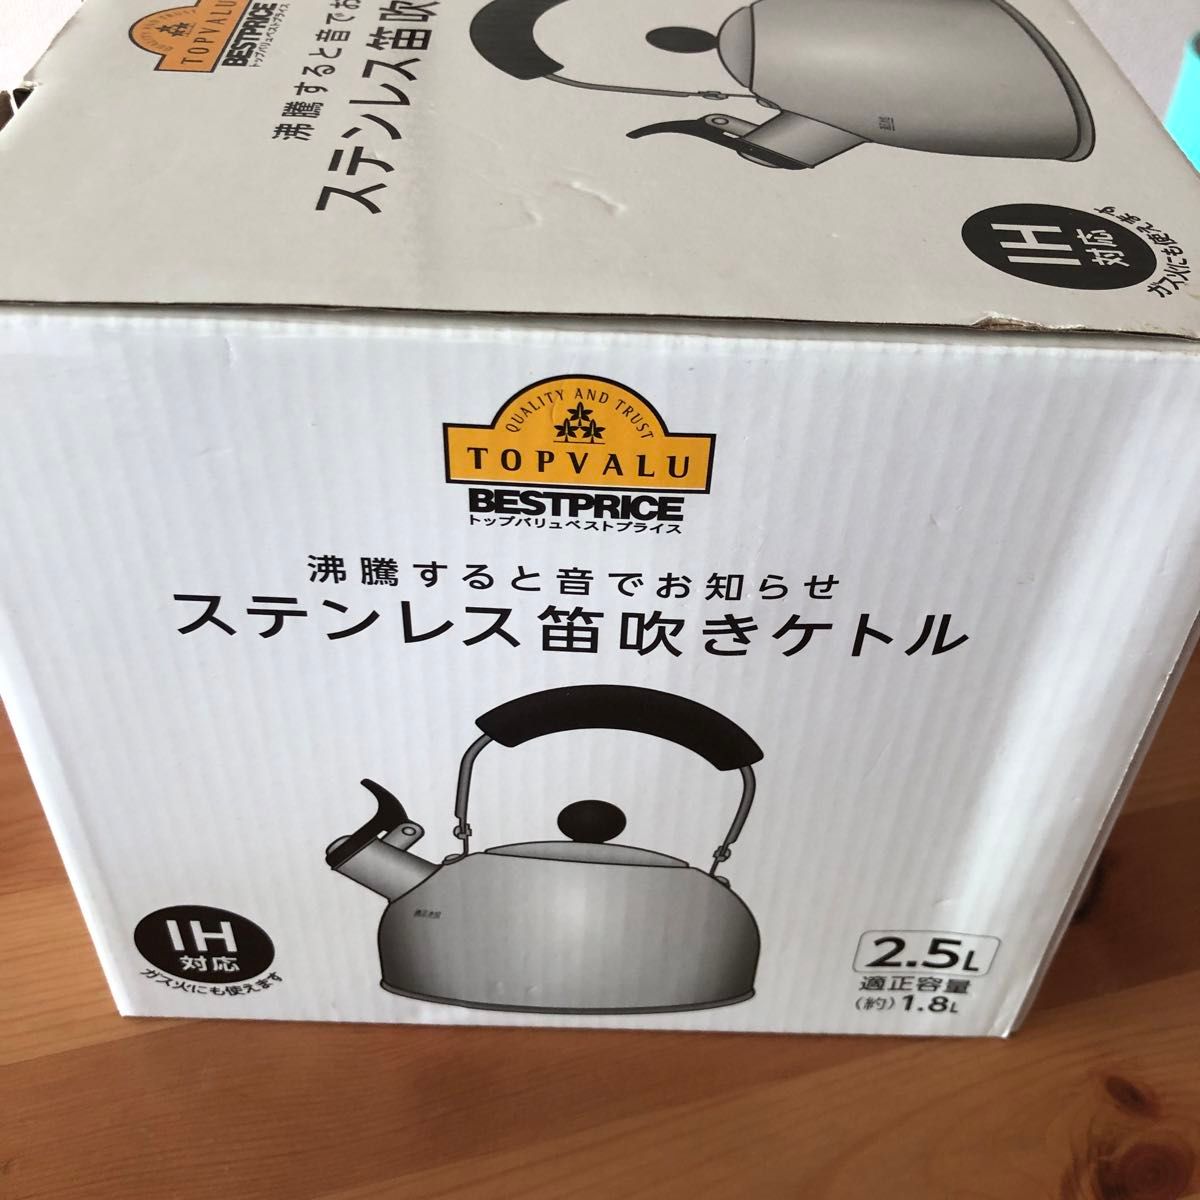 【2.5L】大容量ケトル やかん IH&直火OK 麦茶作りに最適